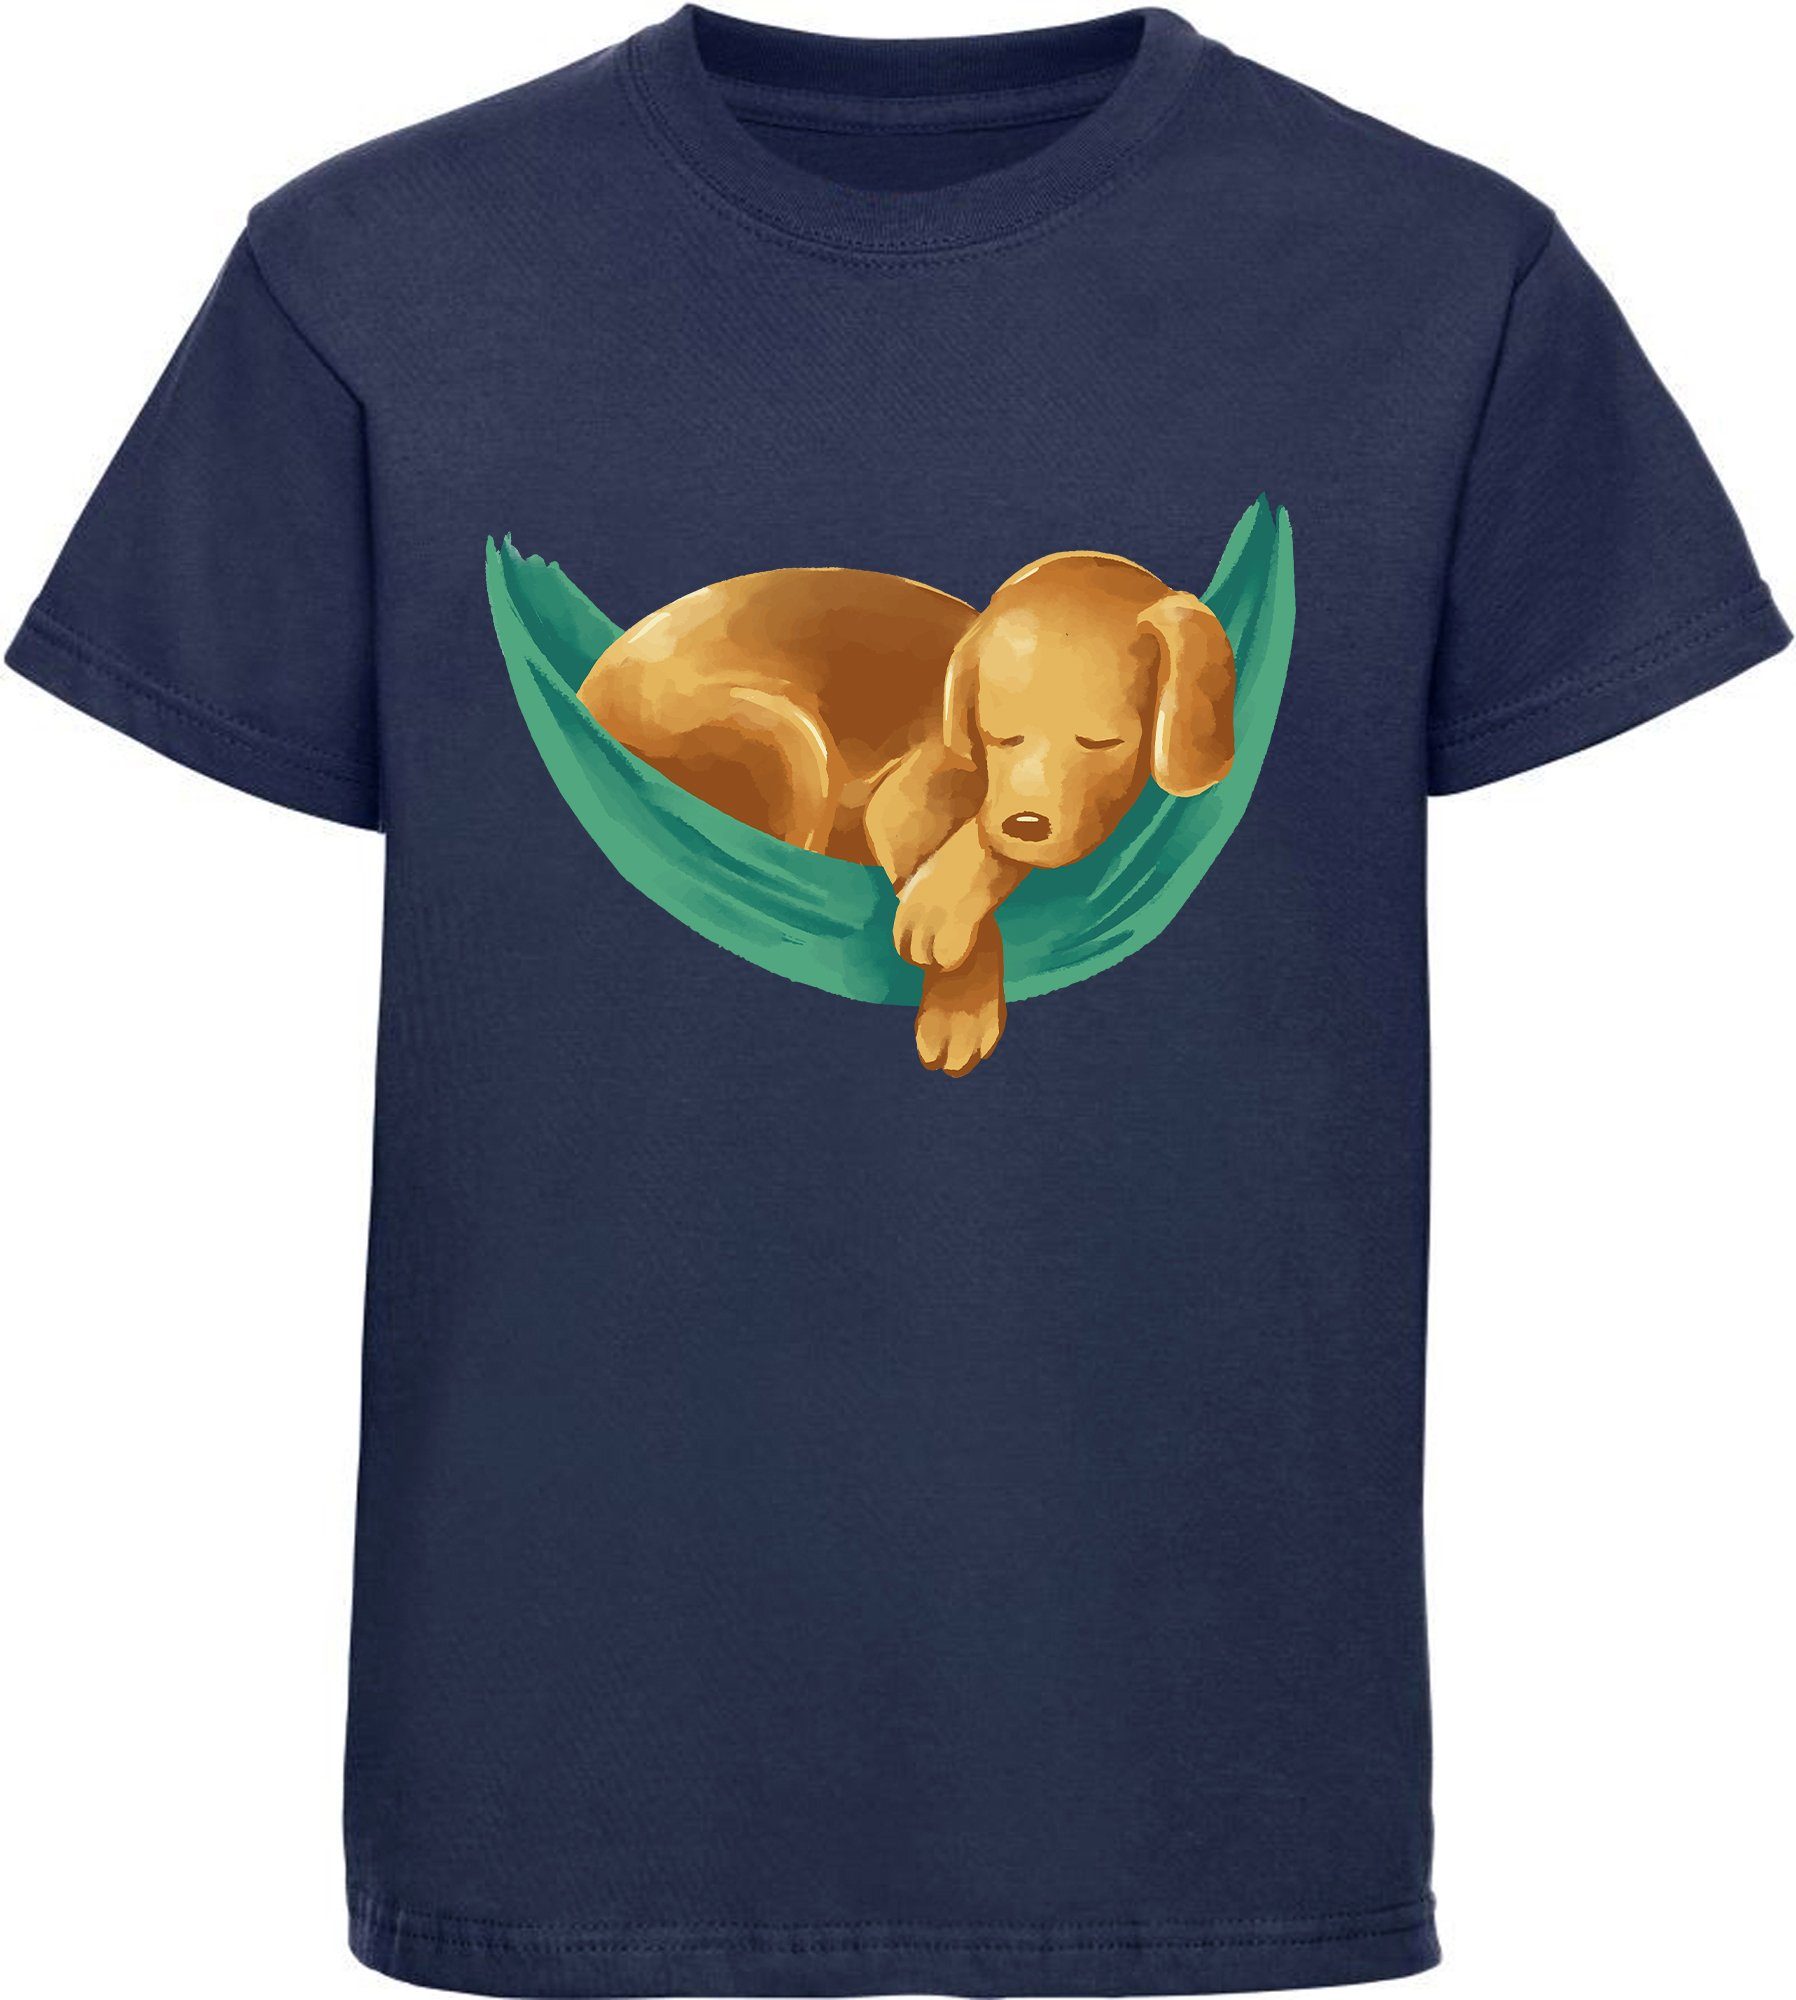 MyDesign24 T-Shirt Kinder Hunde Print Shirt bedruckt - Labrador Welpe in Hängematte Baumwollshirt mit Aufdruck, i245 navy blau